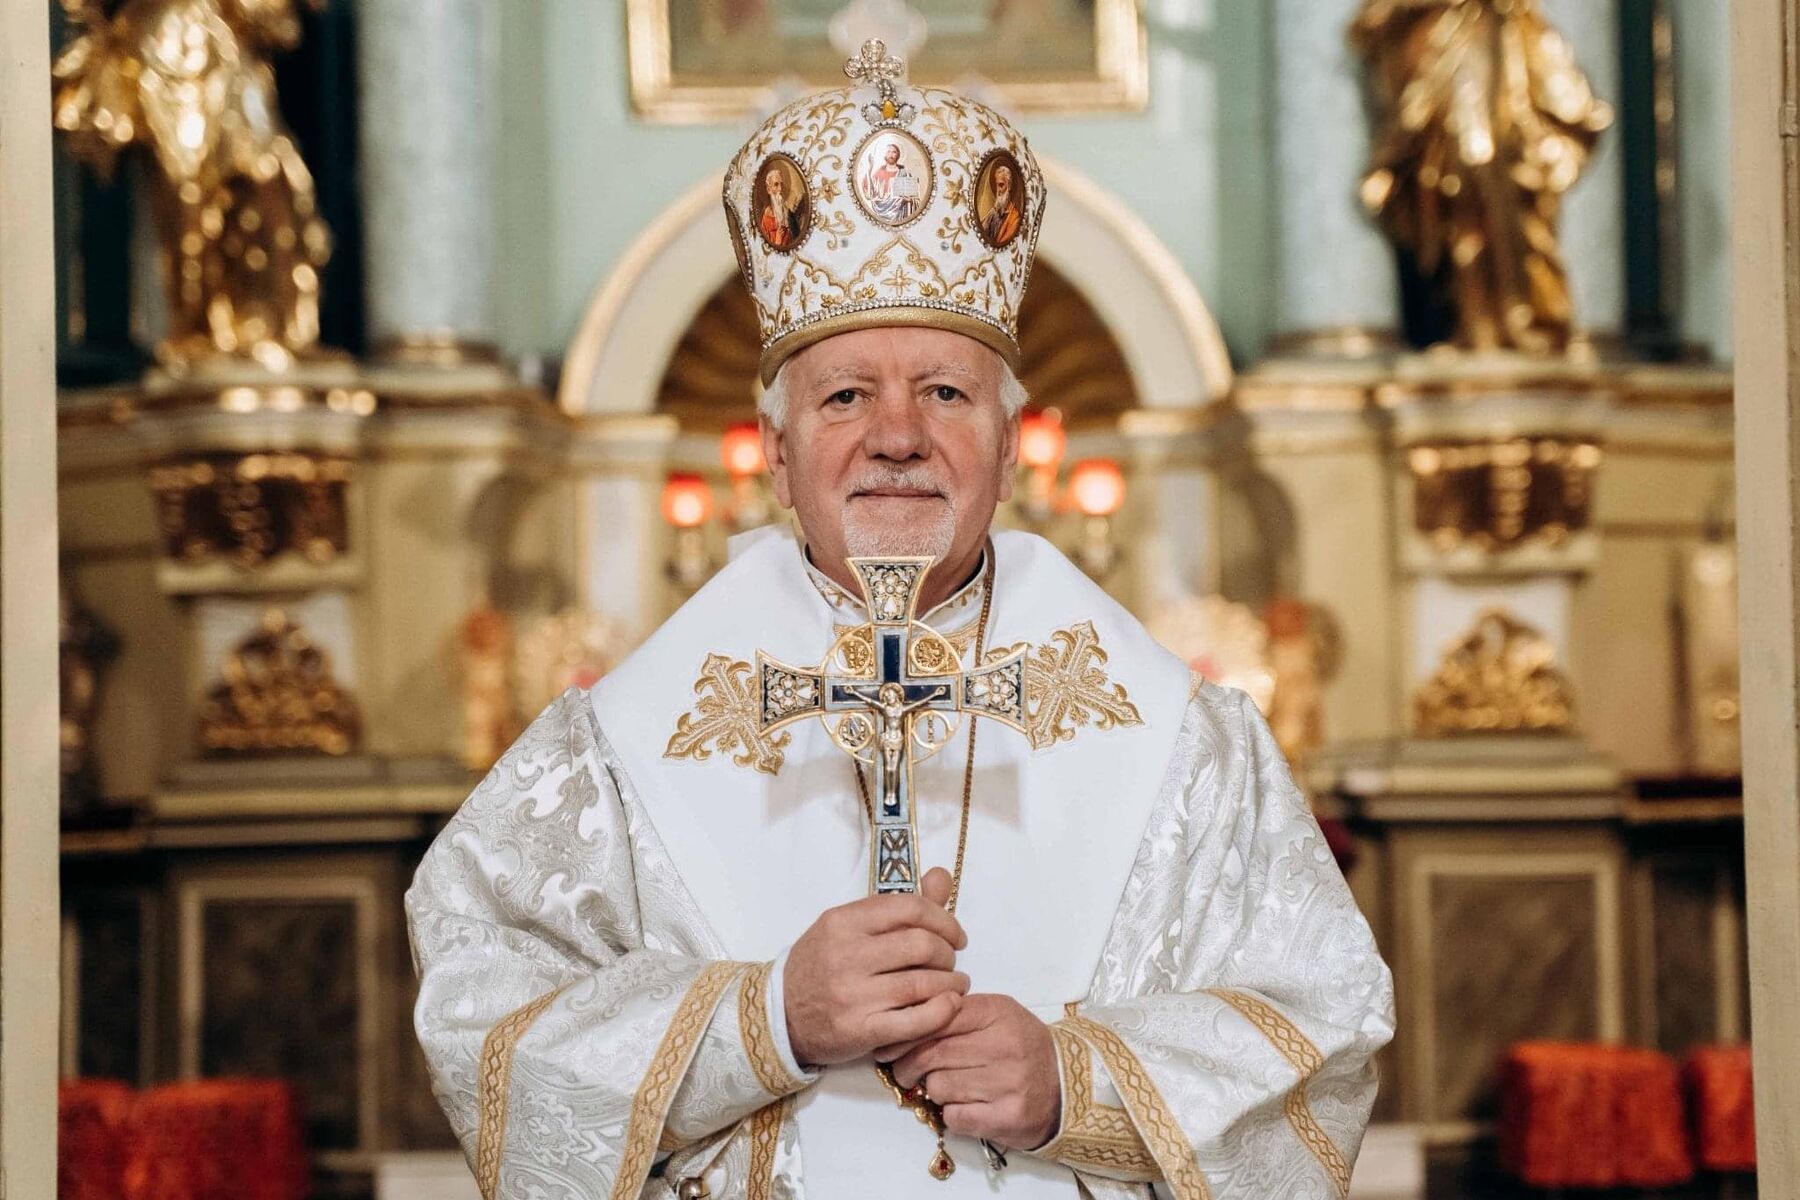 Вітаємо Високопреосвященного Архієпископа і Митрополита Володимира з Днем народження!